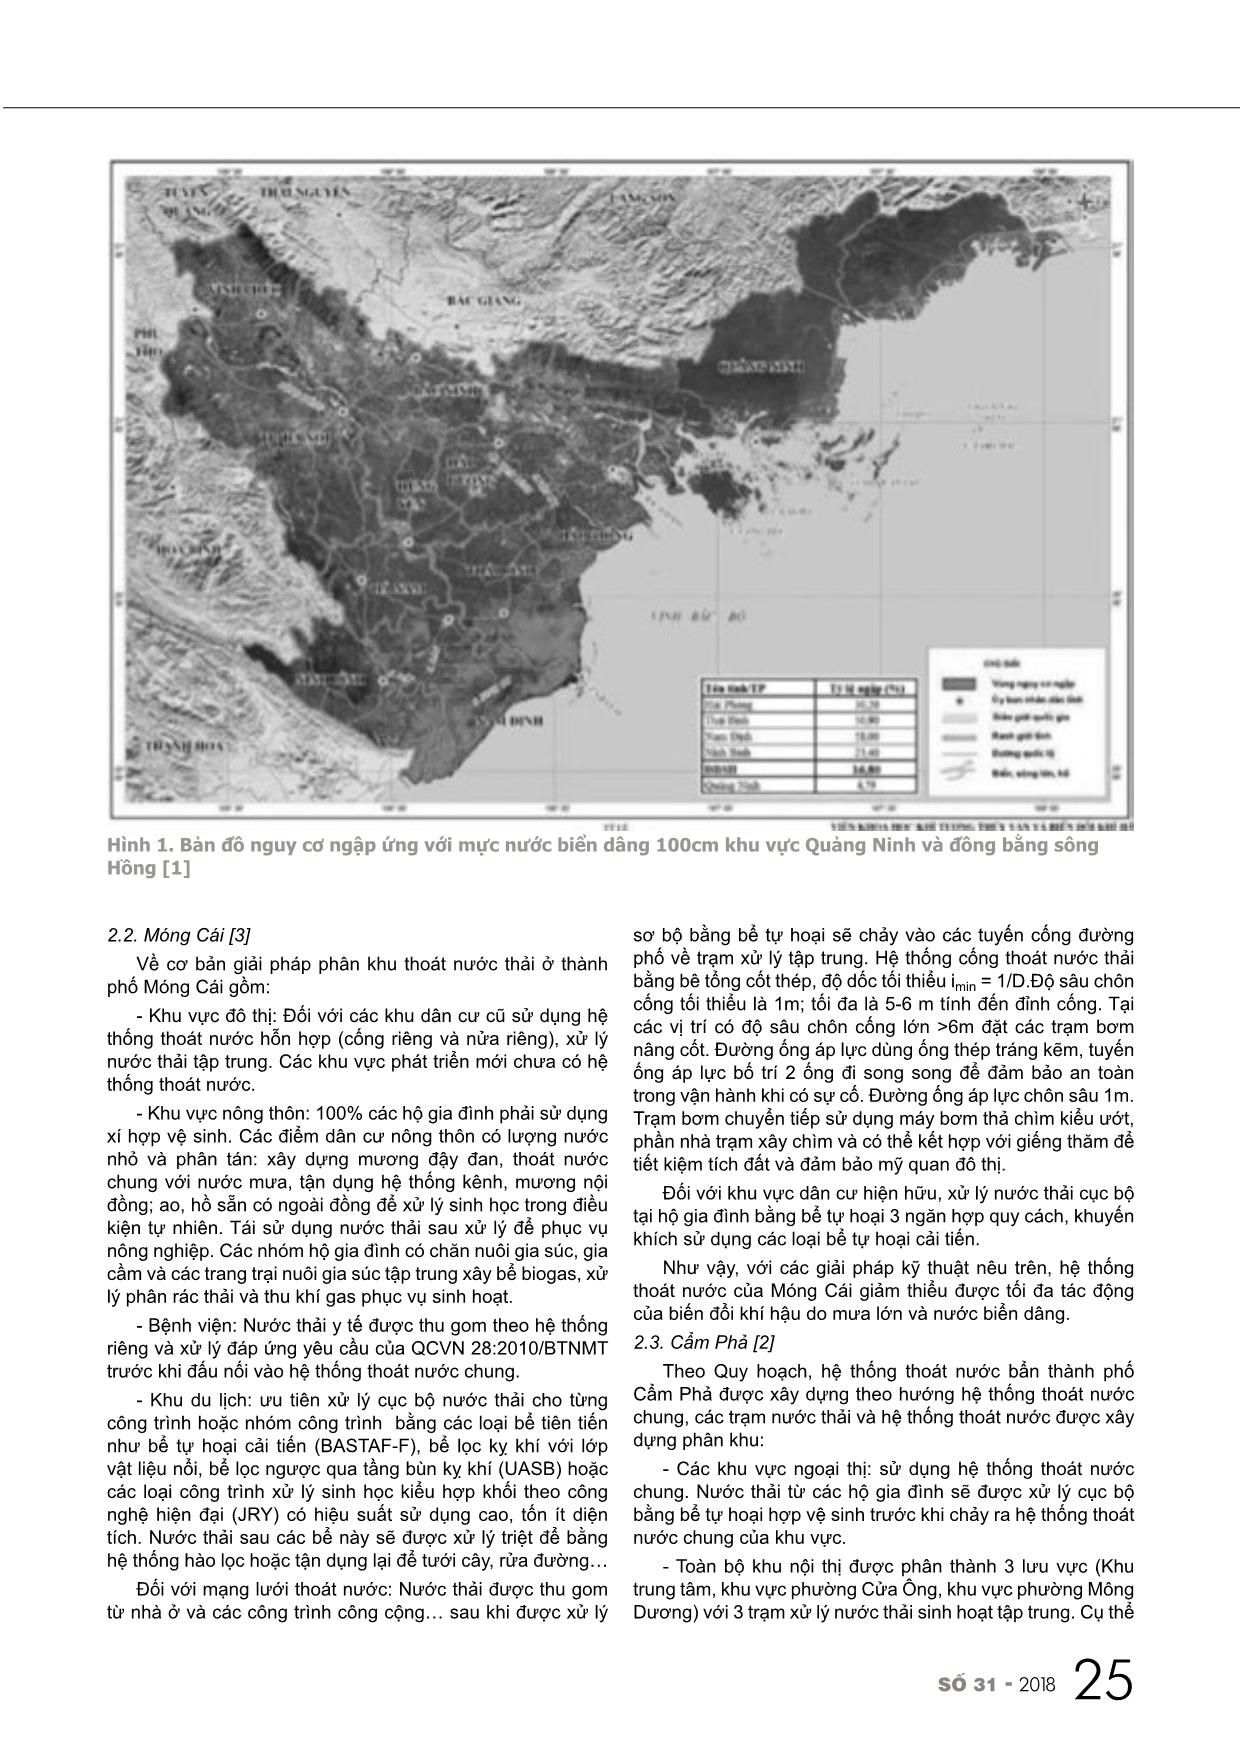 Nhận dạng, đánh giá tác động của biến đổi khí hậu và nước biển dâng đến quy hoạch hệ thống thoát nước bẩn tại các đô thị ven biển tỉnh Quảng Ninh trang 3